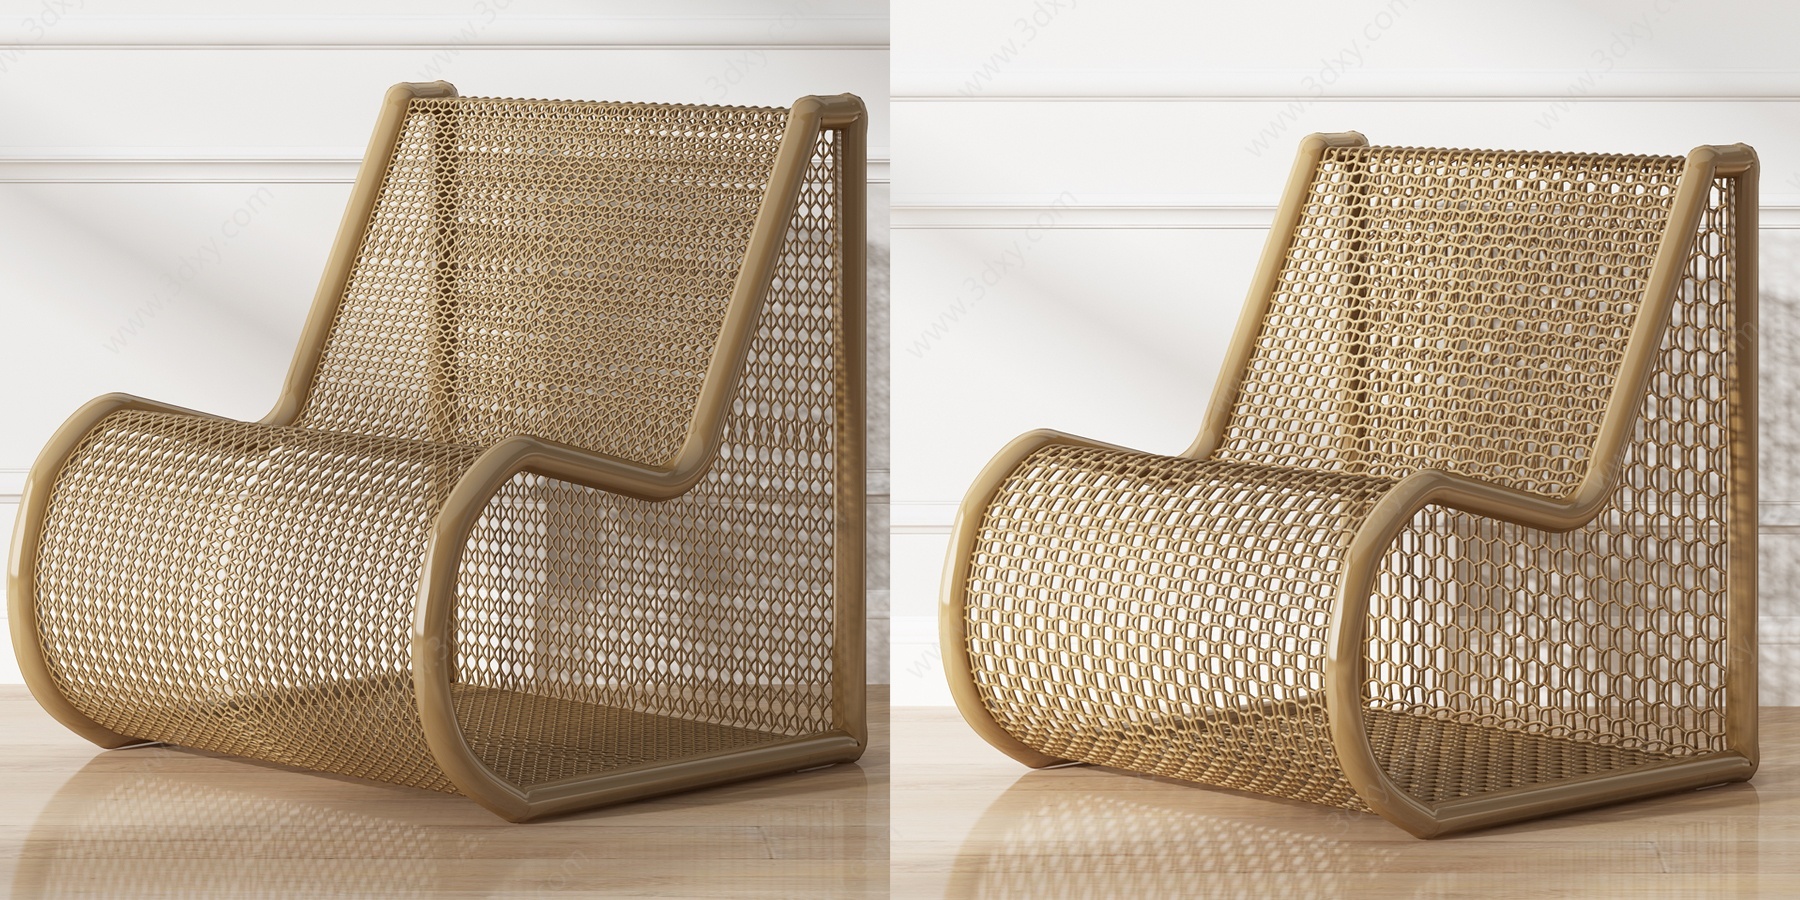 自然风户外编织休闲椅3D模型